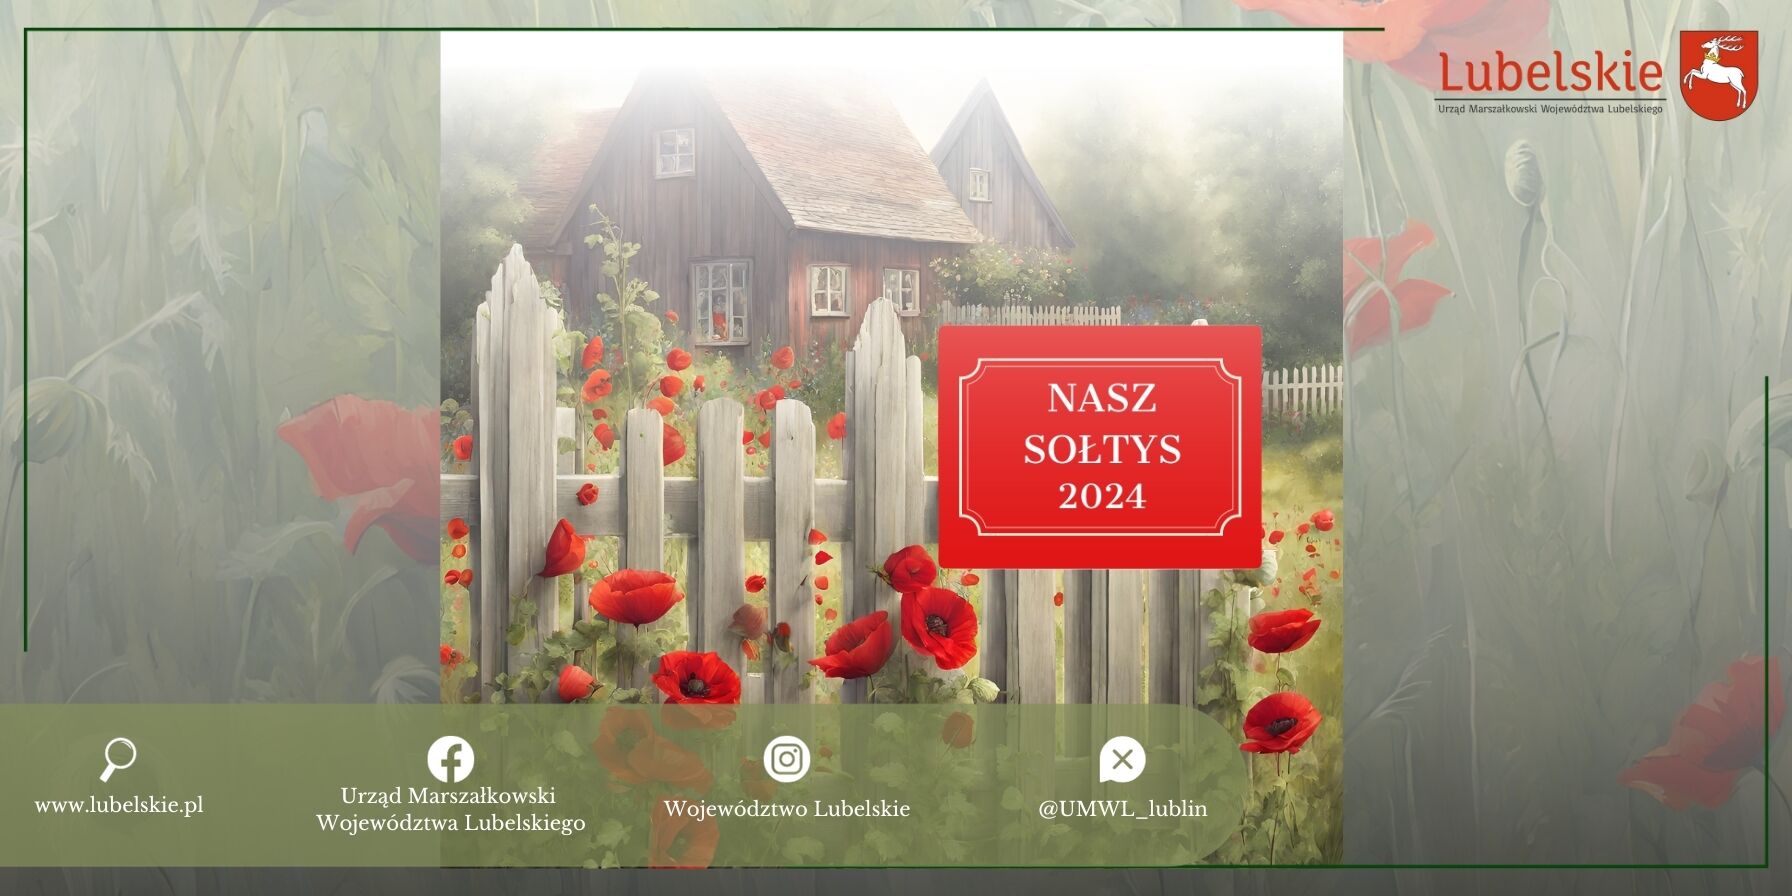 Obraz przedstawia malowniczą wiejską scenę z drewnianym domem za białym płotem, otoczonym przez czerwone maki. Na grafice umieszczono napis "NASZ SOŁTYS 2024" i logotypy.